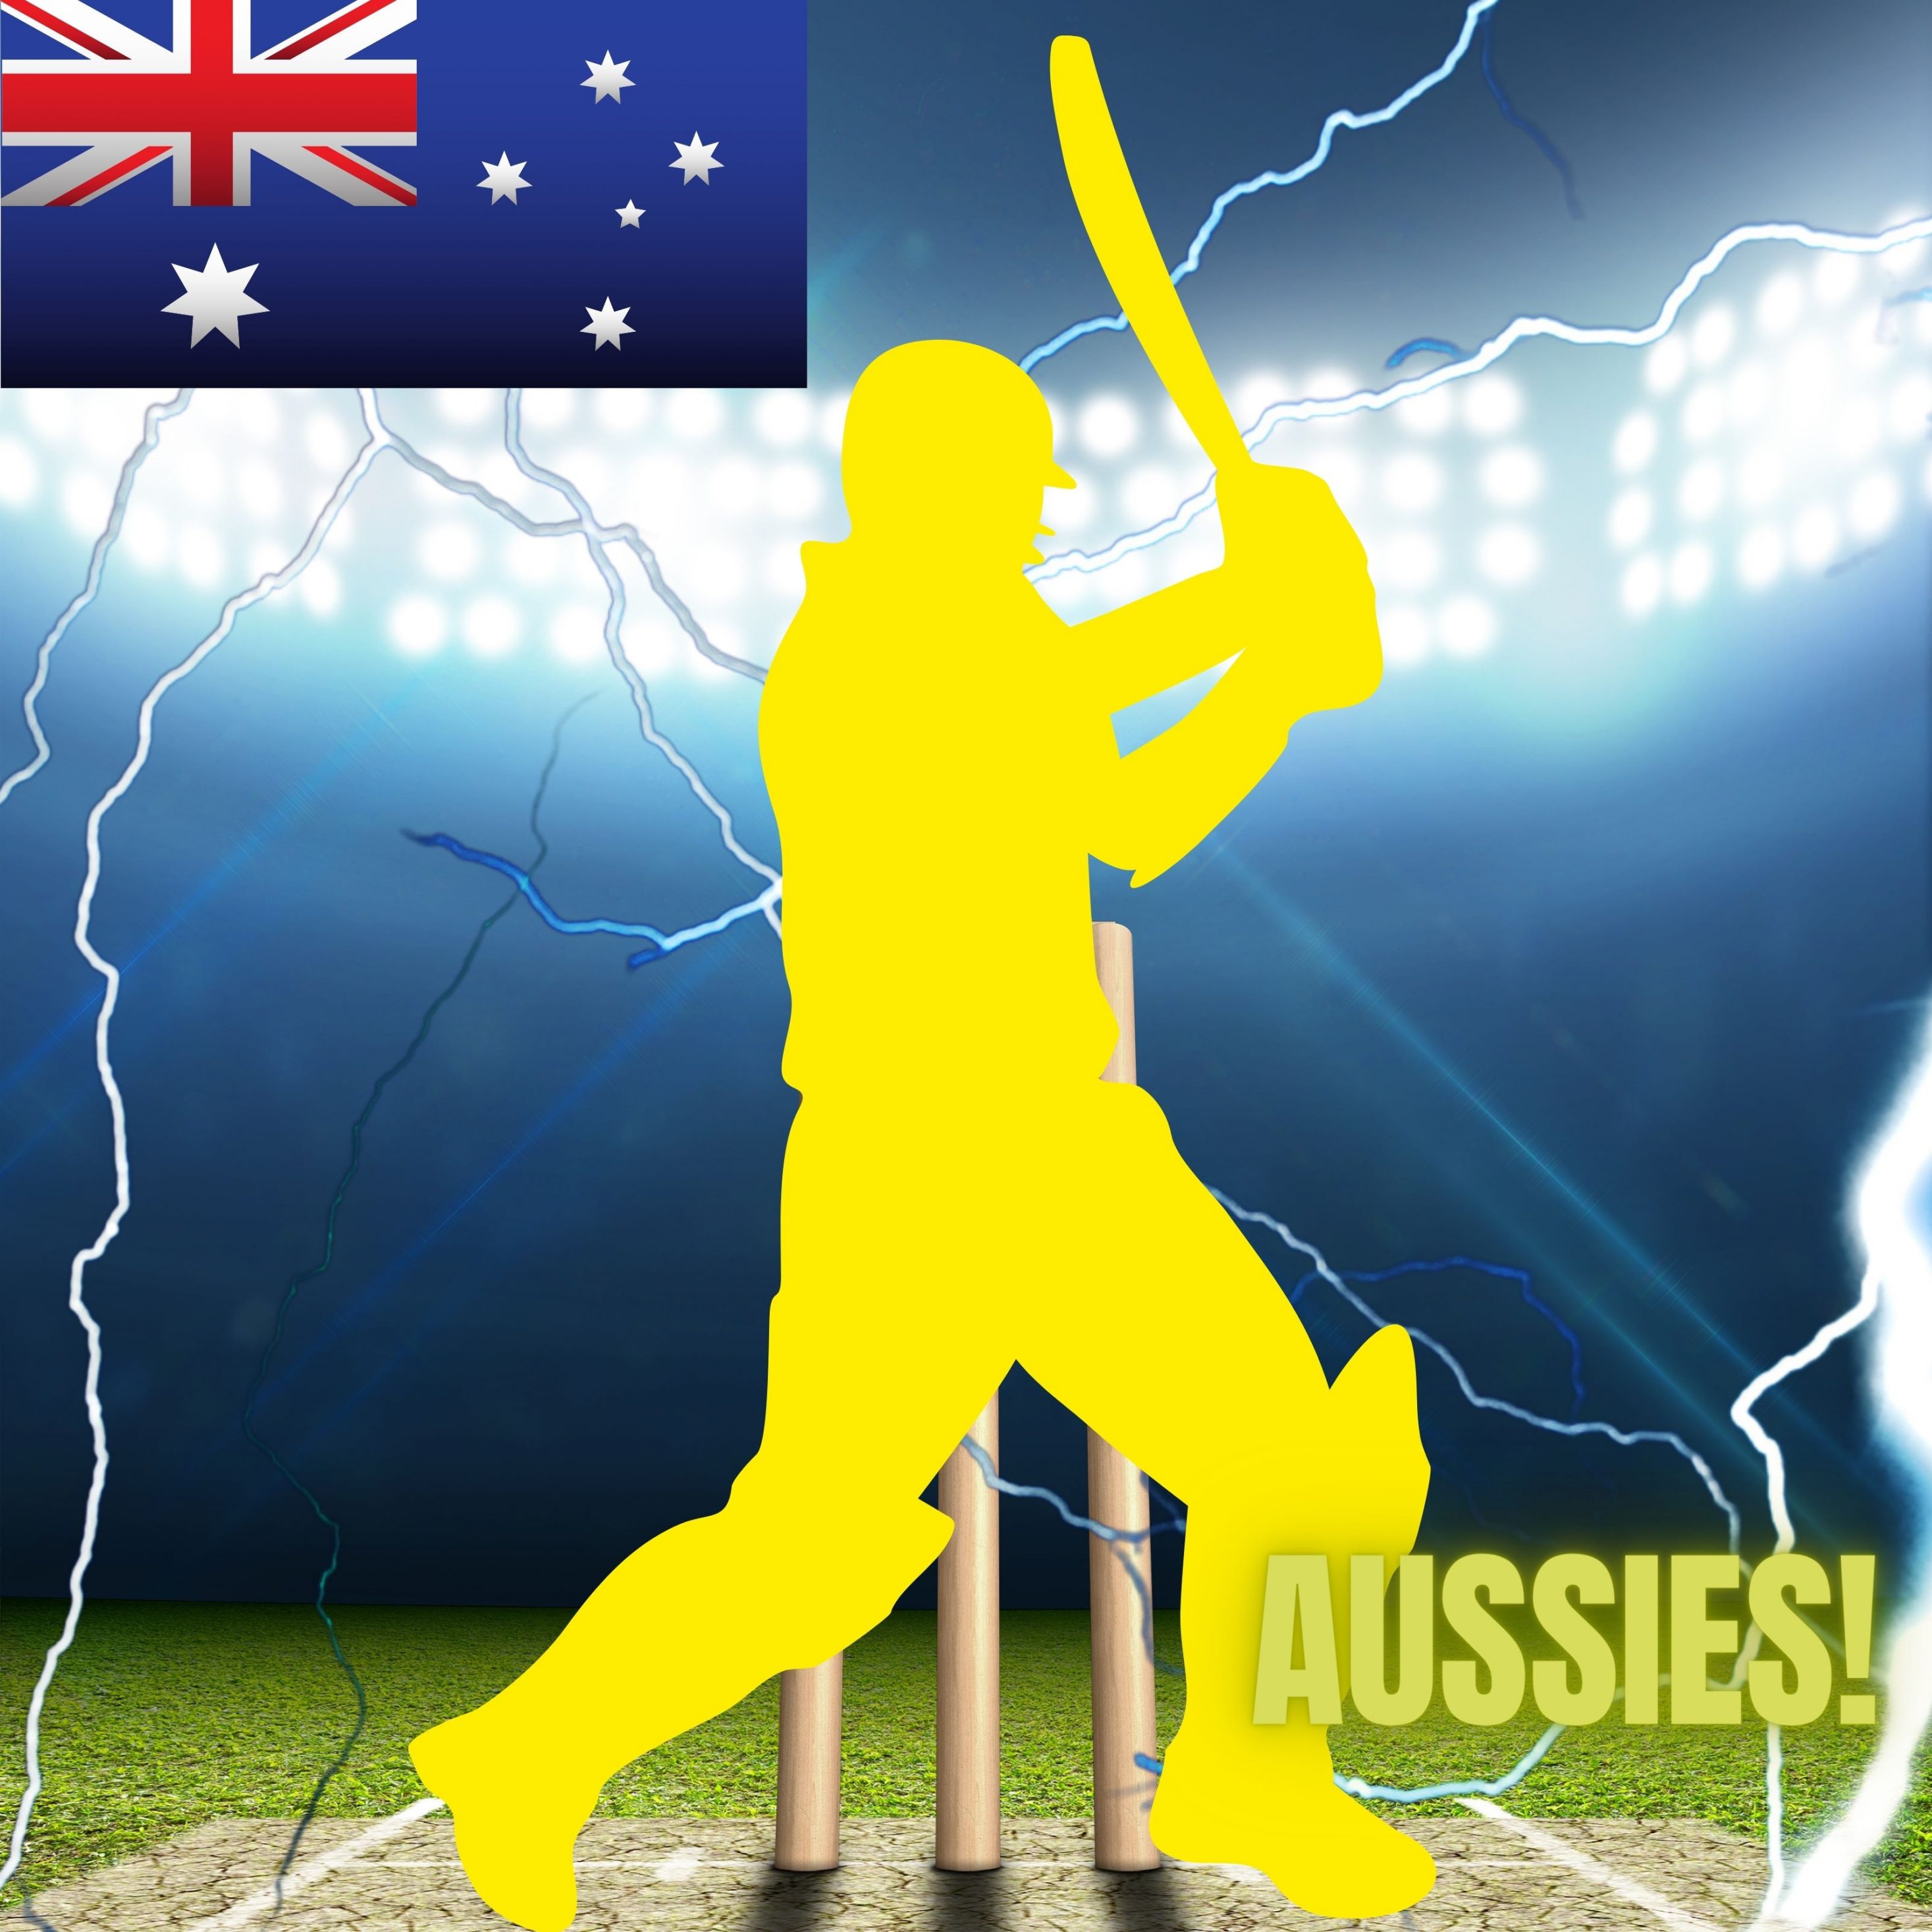 2934x2934 iOS iPad wallpaper 4k Australia Cricket Stadium iPad Wallpaper 2934x2934 pixels resolution